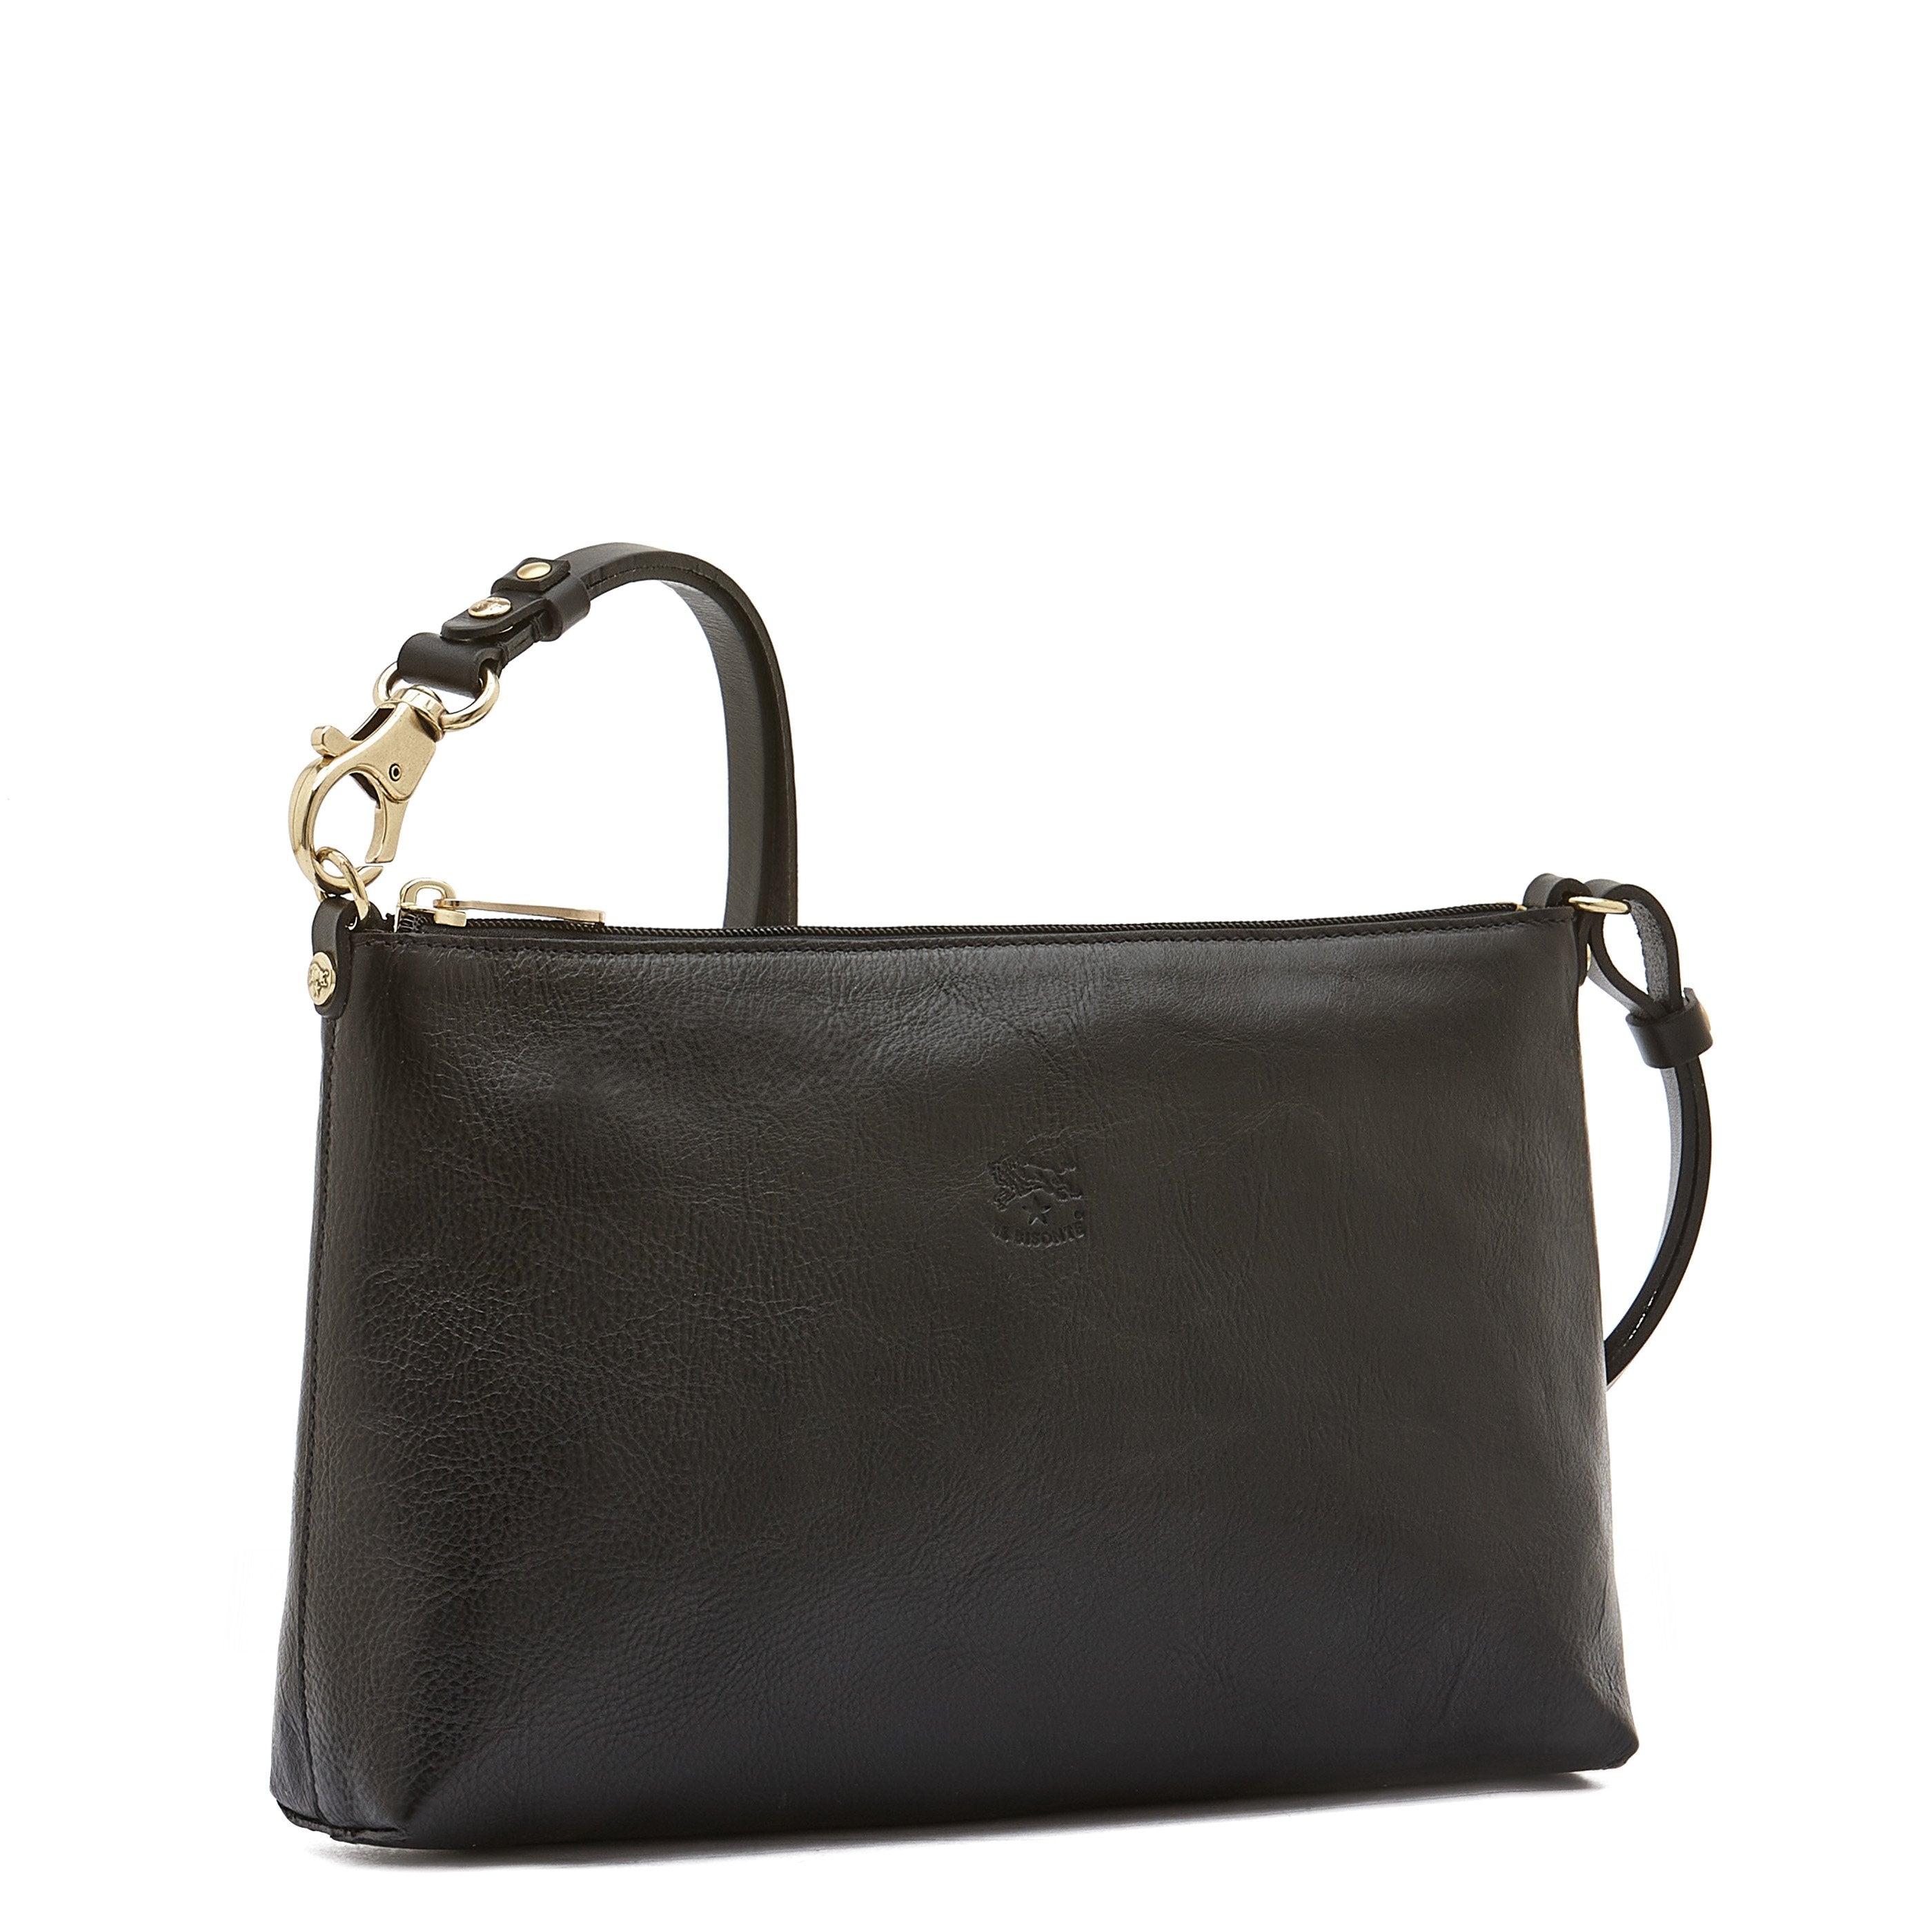 Salina | Women's Shoulder Bag in Leather color Black